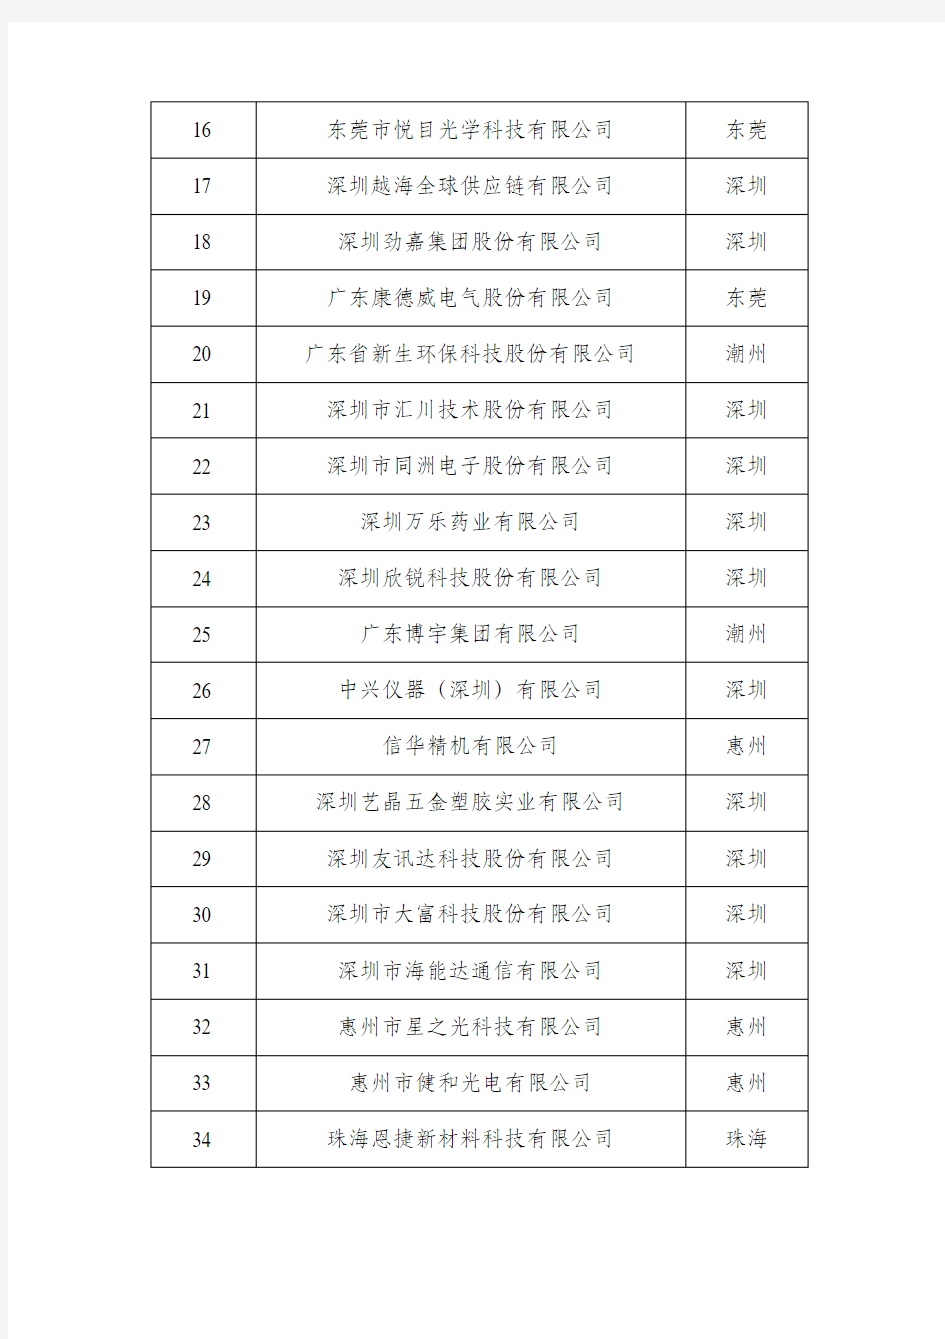 2019年广东省两化融合管理体系贯标试点企业名单